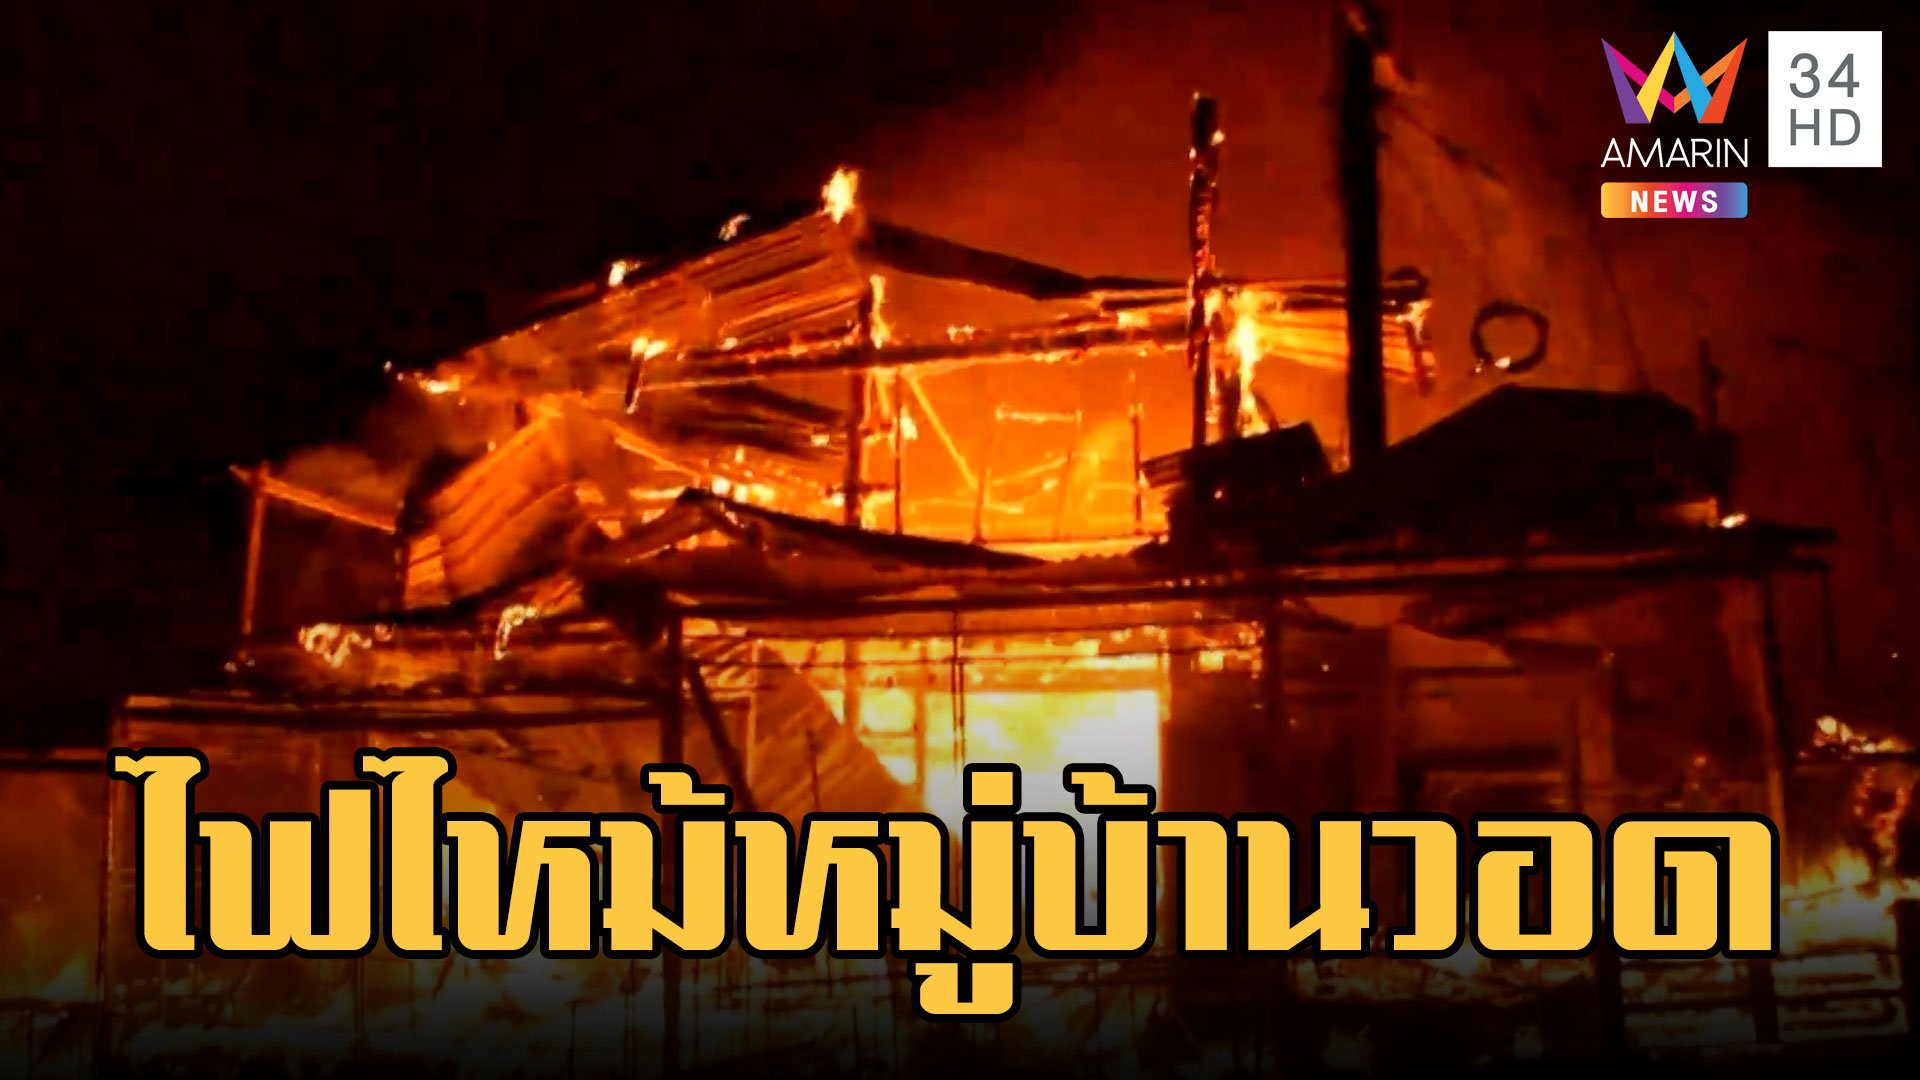 ไฟไหม้ร้านขายของฝากสะพานมอญ สังขละบุรี | ข่าวเที่ยงอมรินทร์ | 17 ก.พ.66 | ข่าวเที่ยงอมรินทร์ | 17 ก.พ. 66 | AMARIN TVHD34